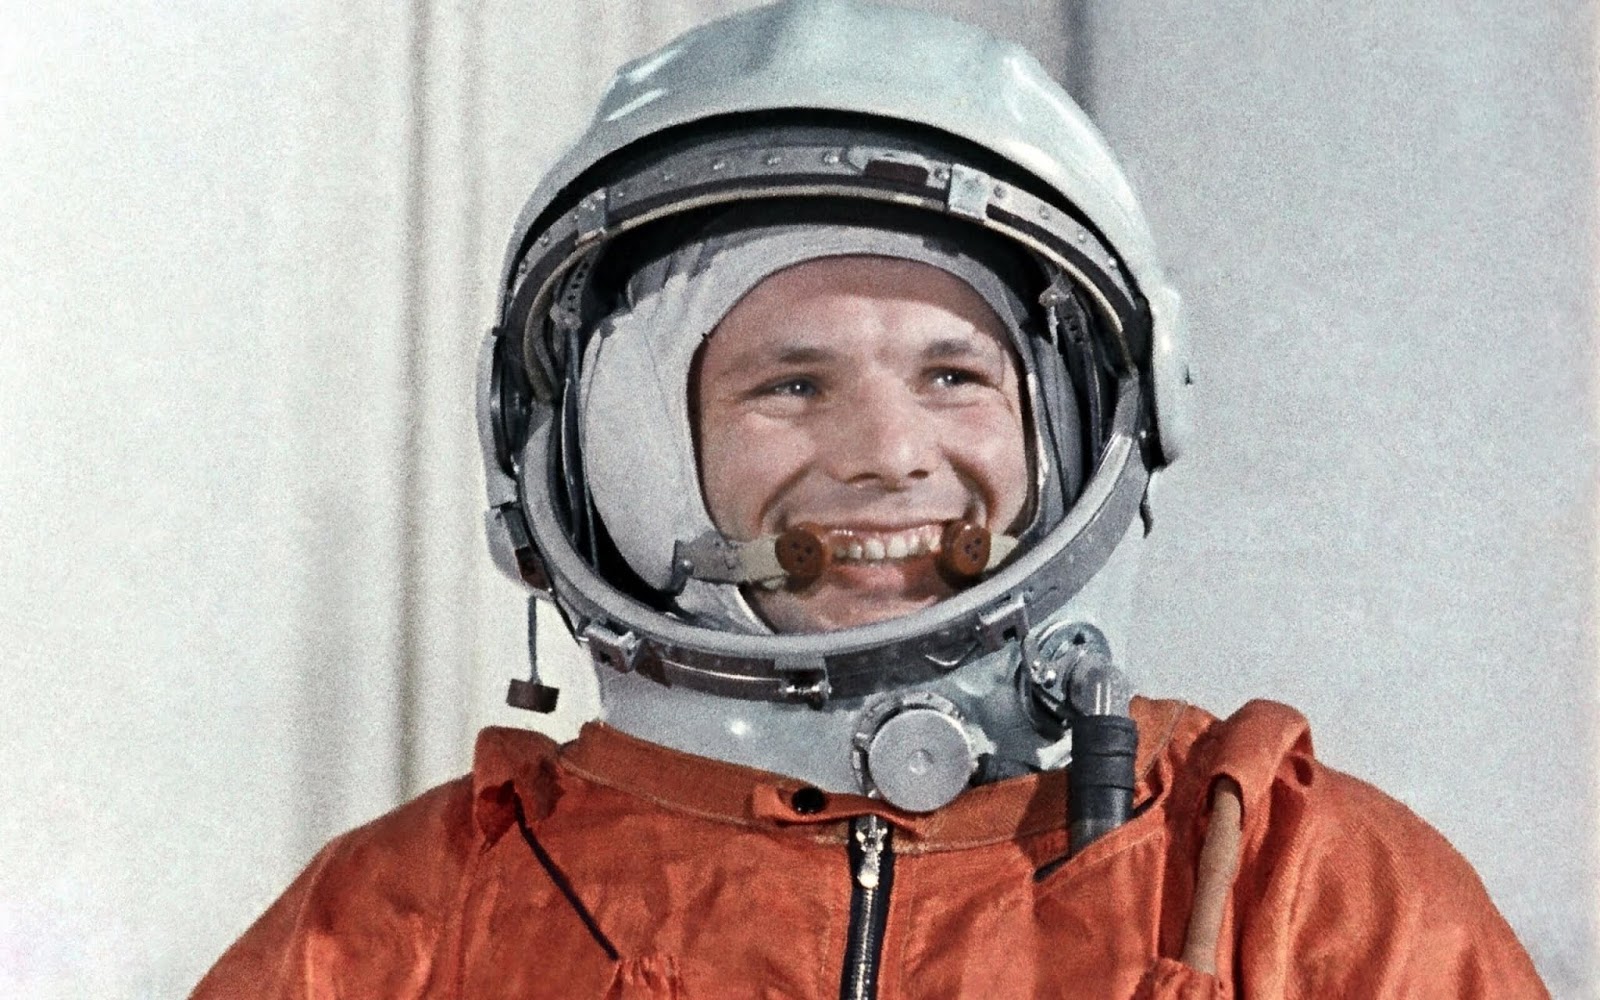 پاسخ خروشچف نیز 60 سال پیش در 12 آوریل 1961 داده شد، وقتی یوری گاگارین، سوار بر فضاپیمایی به نام Vostok 1 مدار زمین را در نوردید.